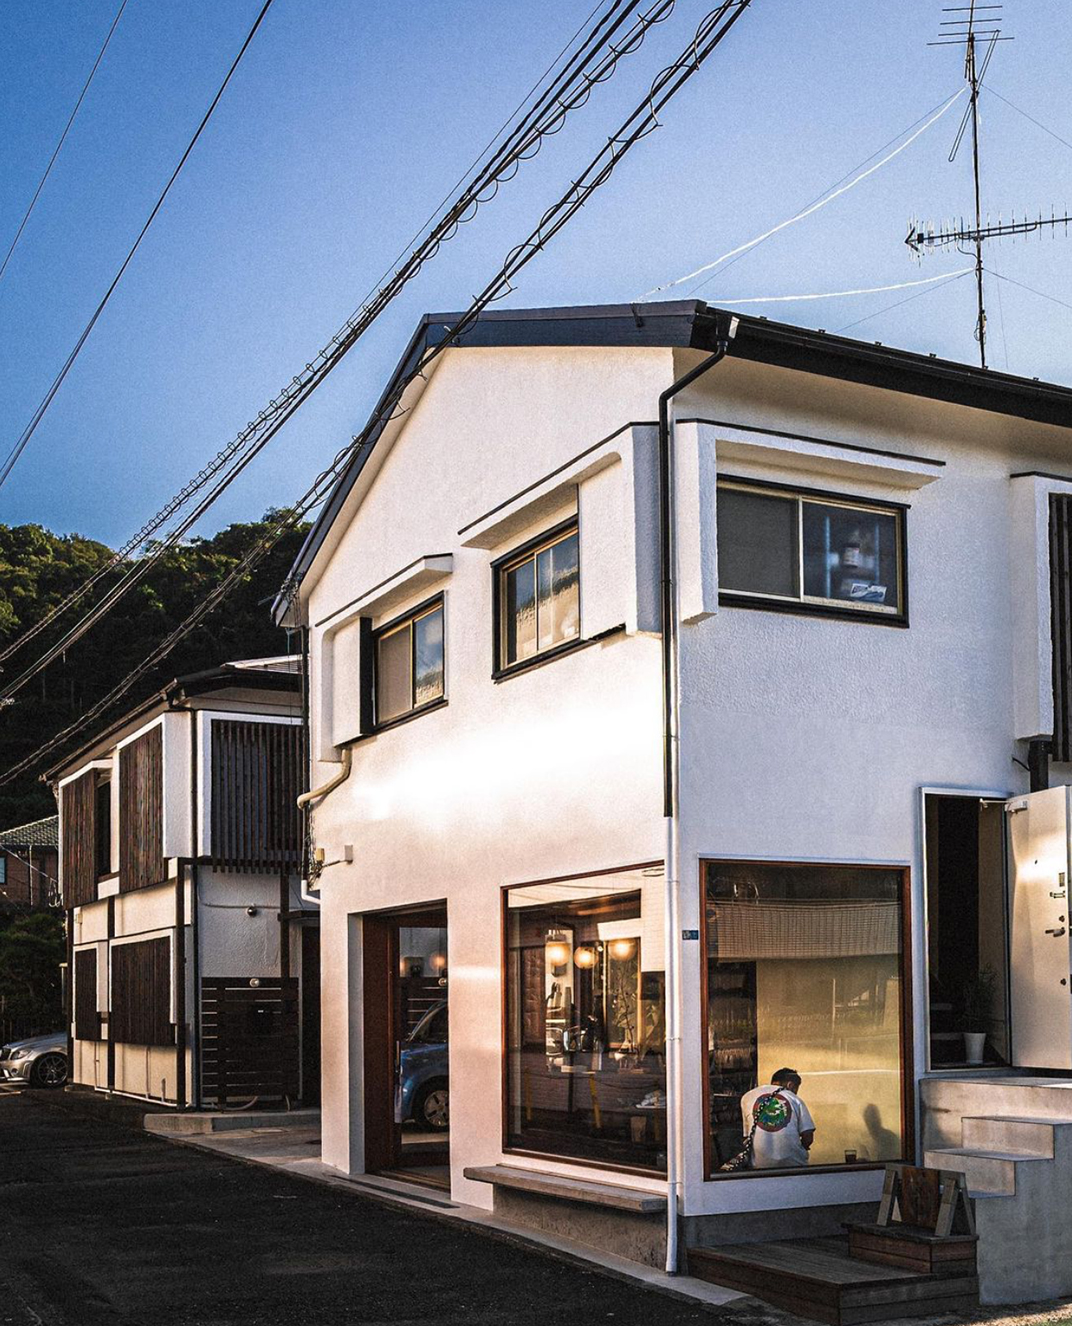 有点斯卡帕元素的咖啡店 日本 成都 咖啡店 木色 石材 logo设计 vi设计 空间设计